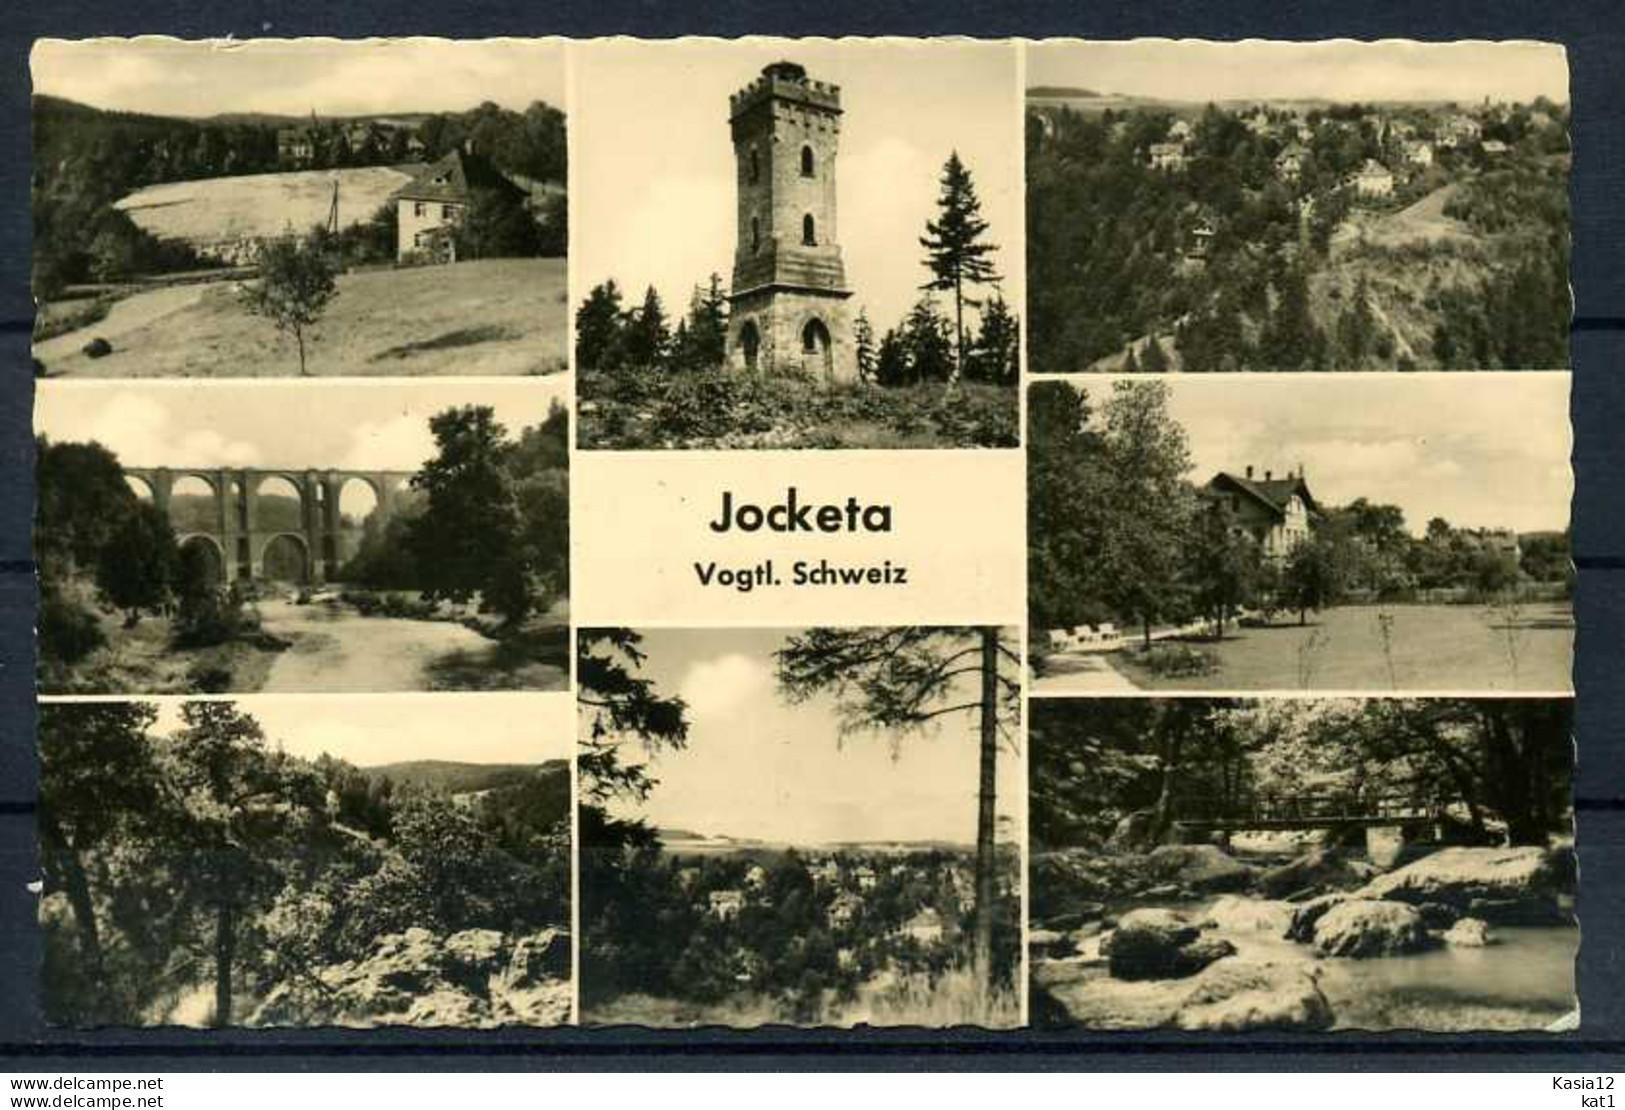 M06077)Ansichtskarte: Jocketa - Pöhl